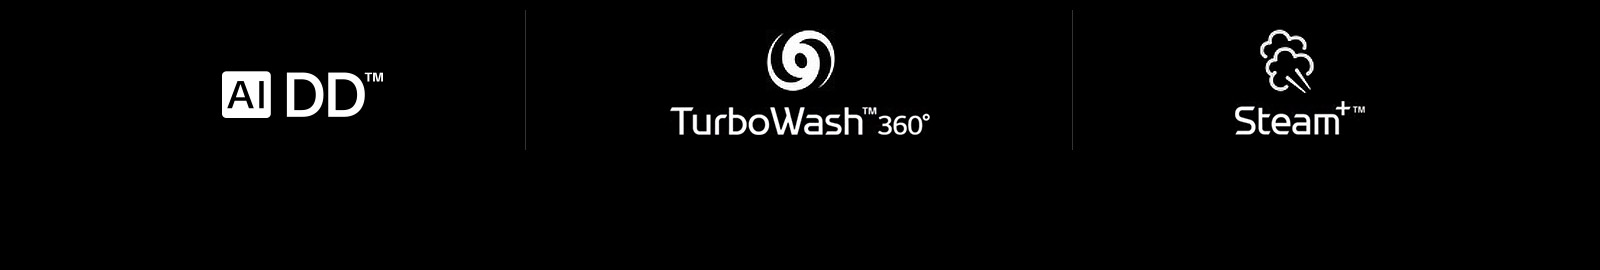 Quyidagi toʻrtta LG belgilari joylashgan qator: AI DD belgisi. TurboWash 360 belgisi. Steam belgisi.